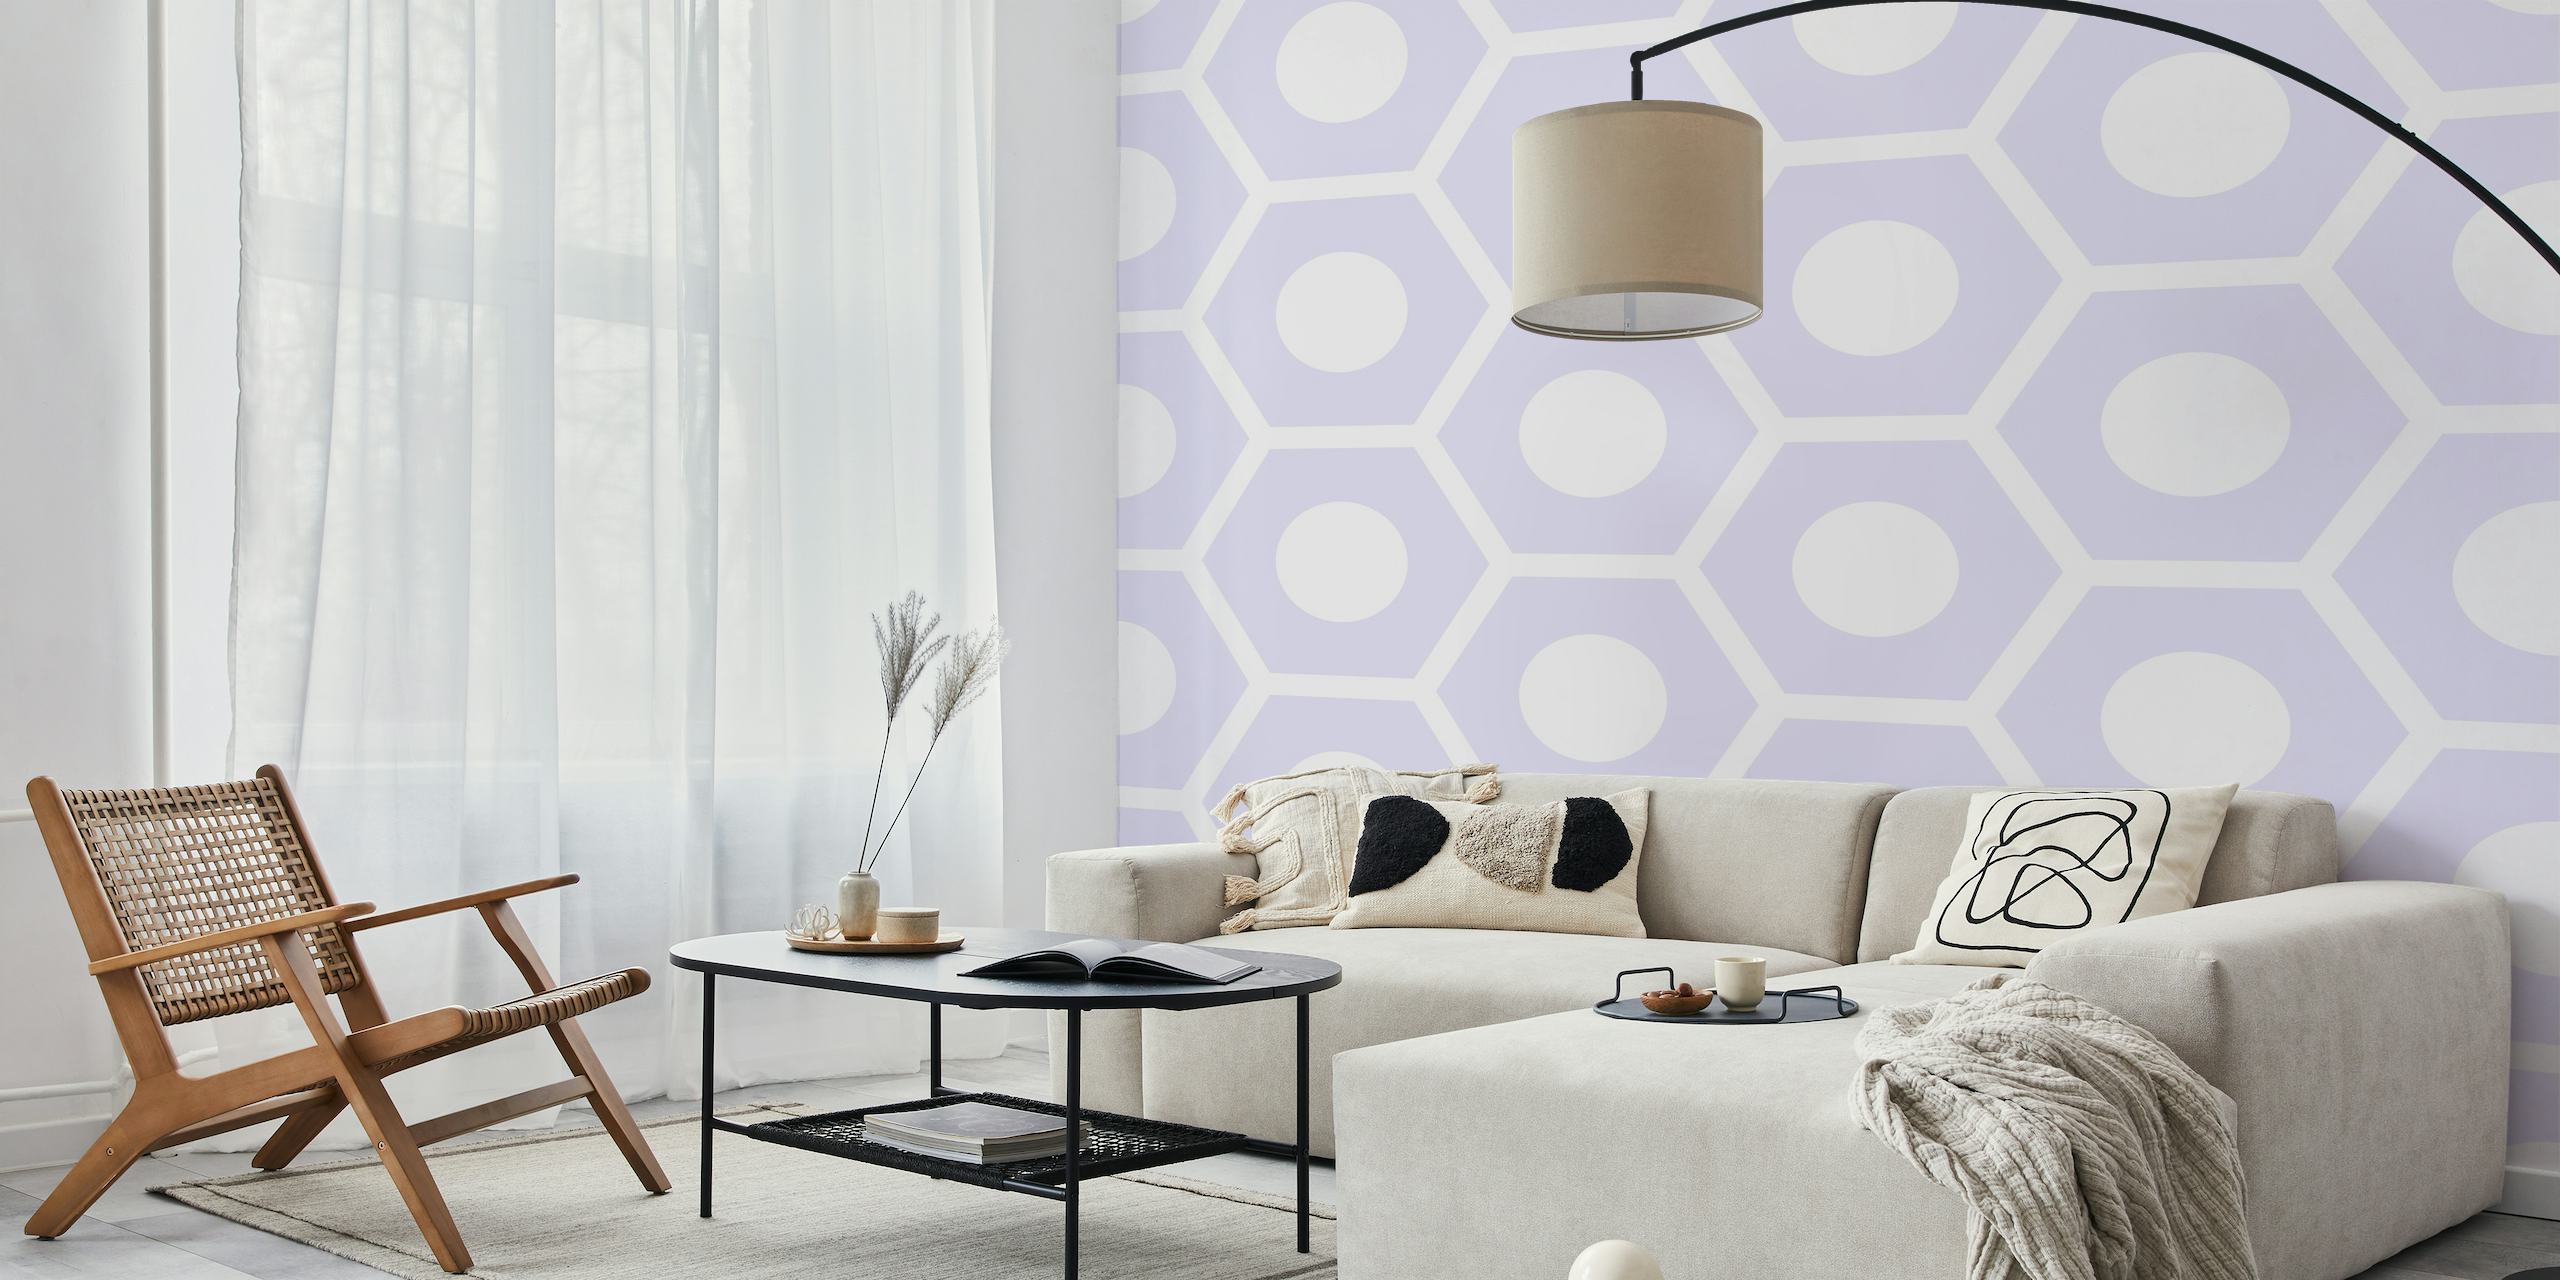 Fiolett sekskantmønster tapet for en moderne og elegant interiørdekor